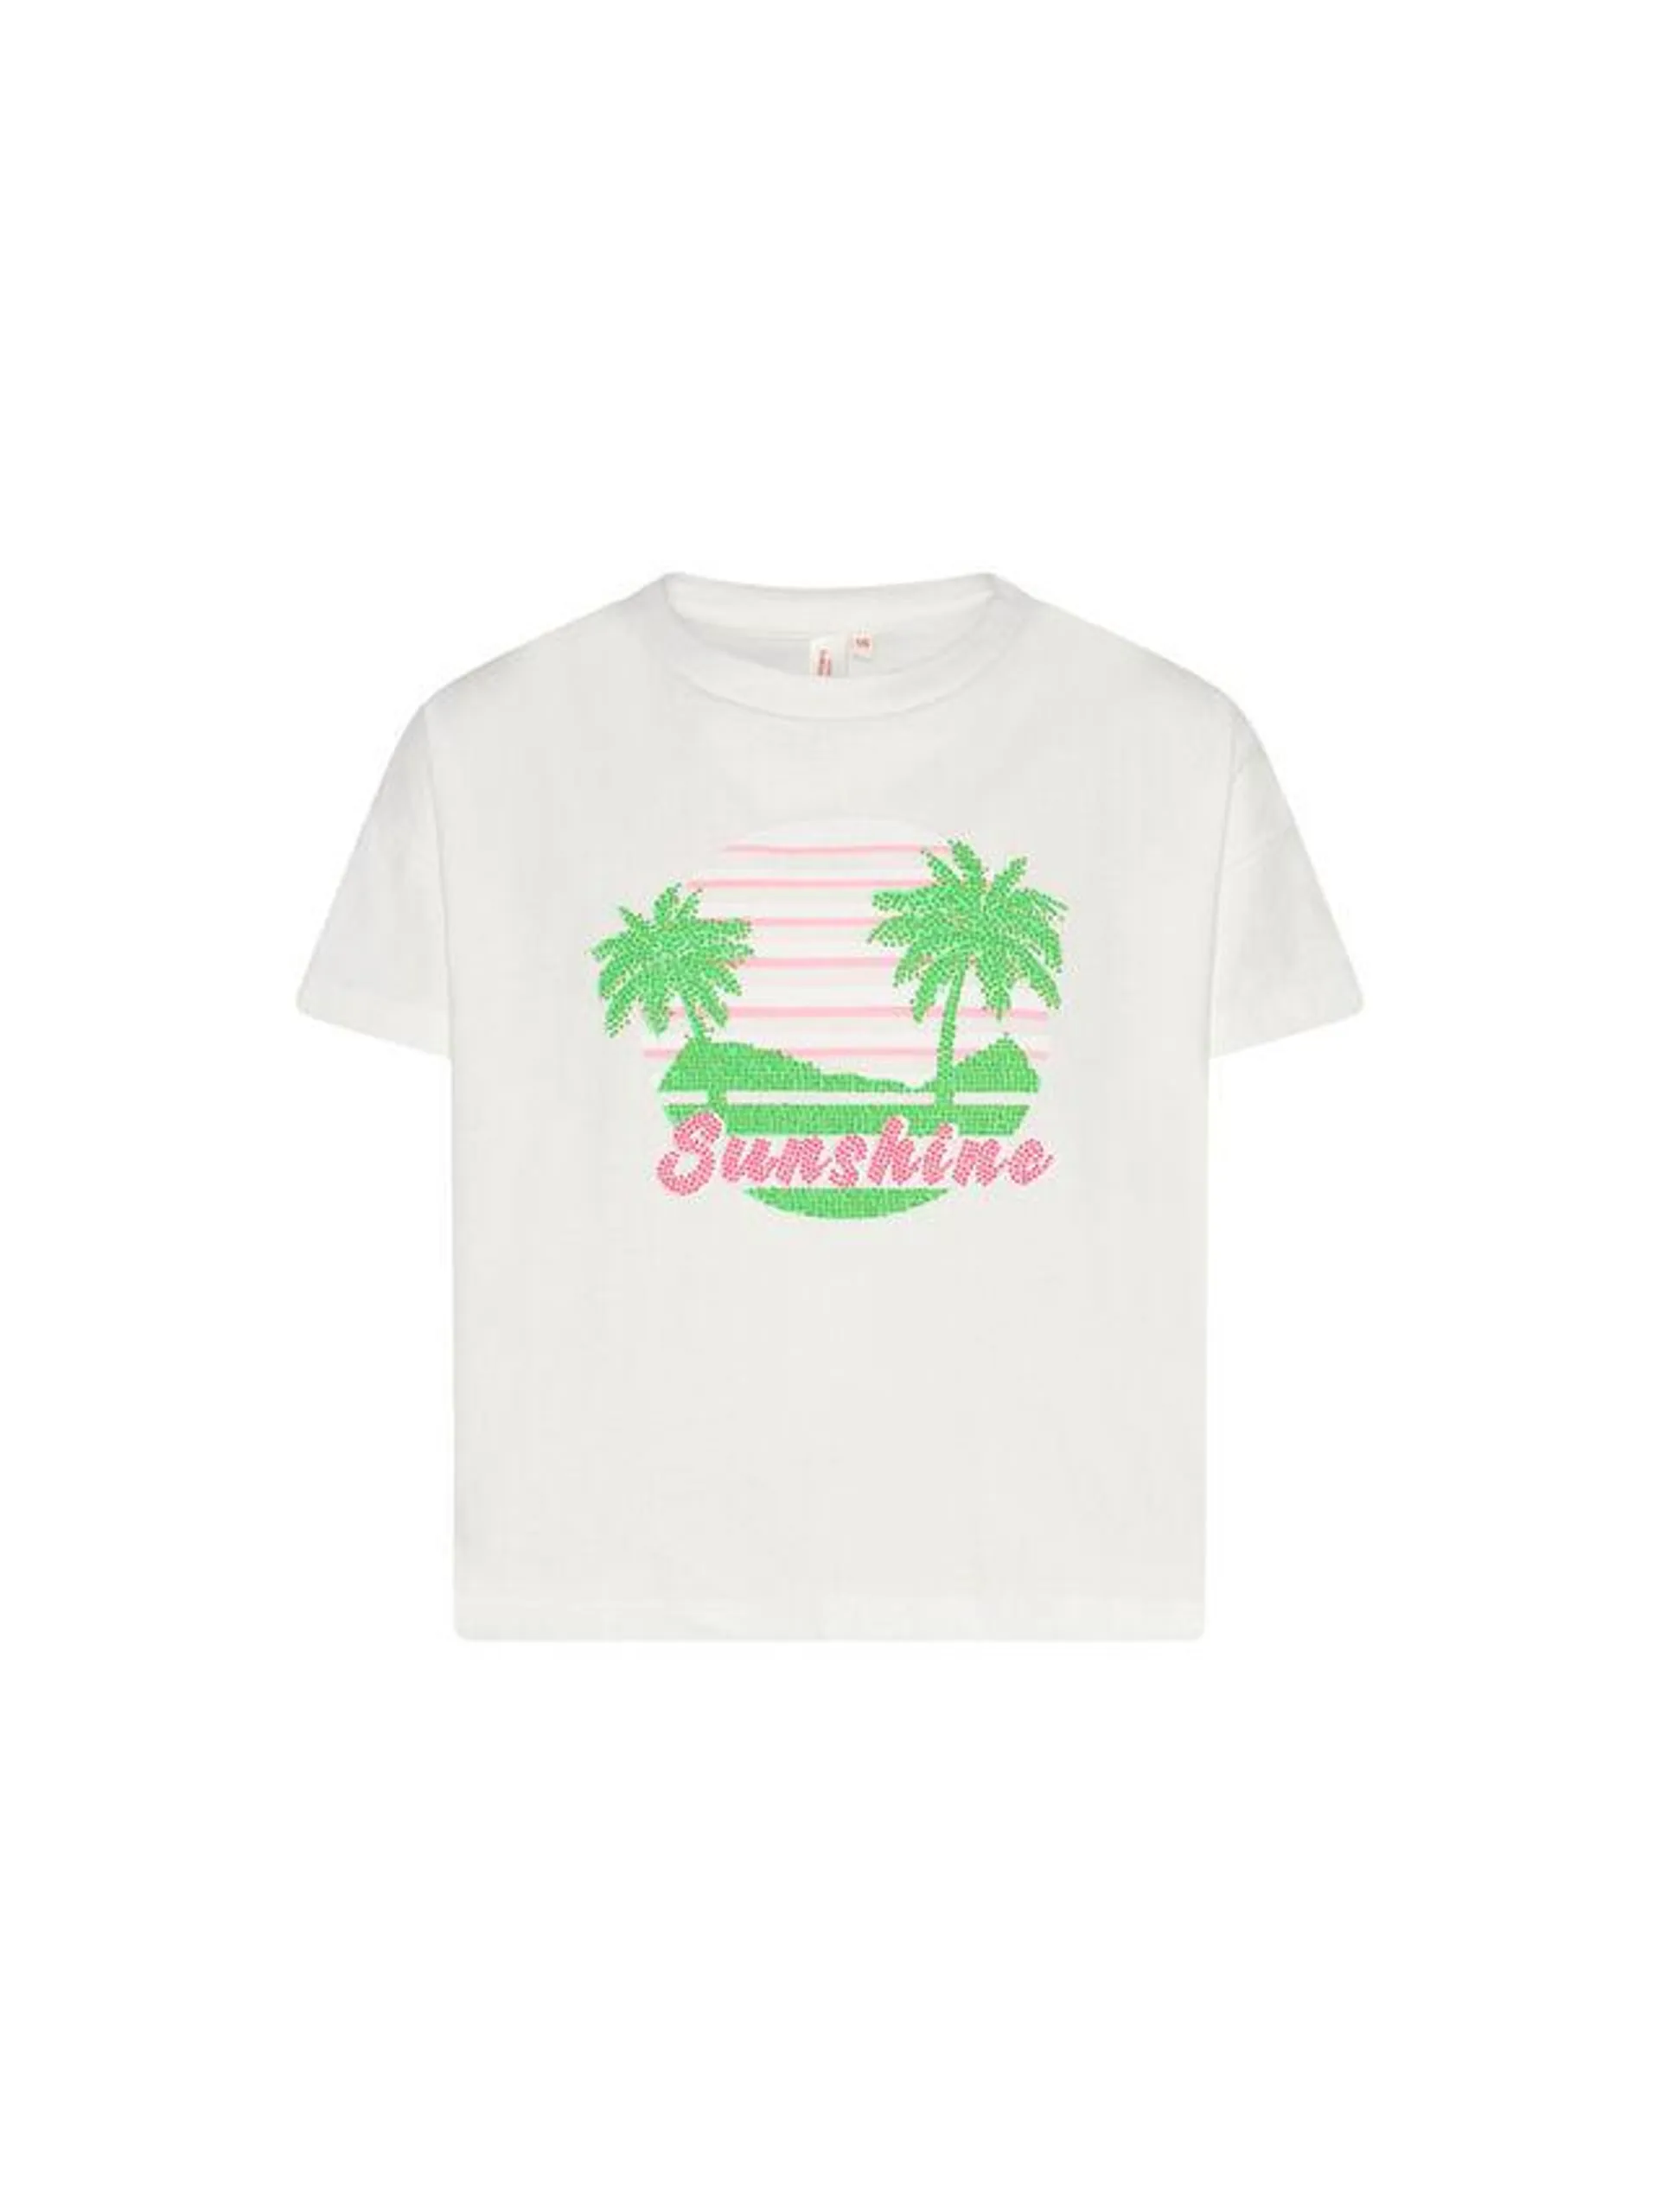 A076 kenza t-shirt sunshine